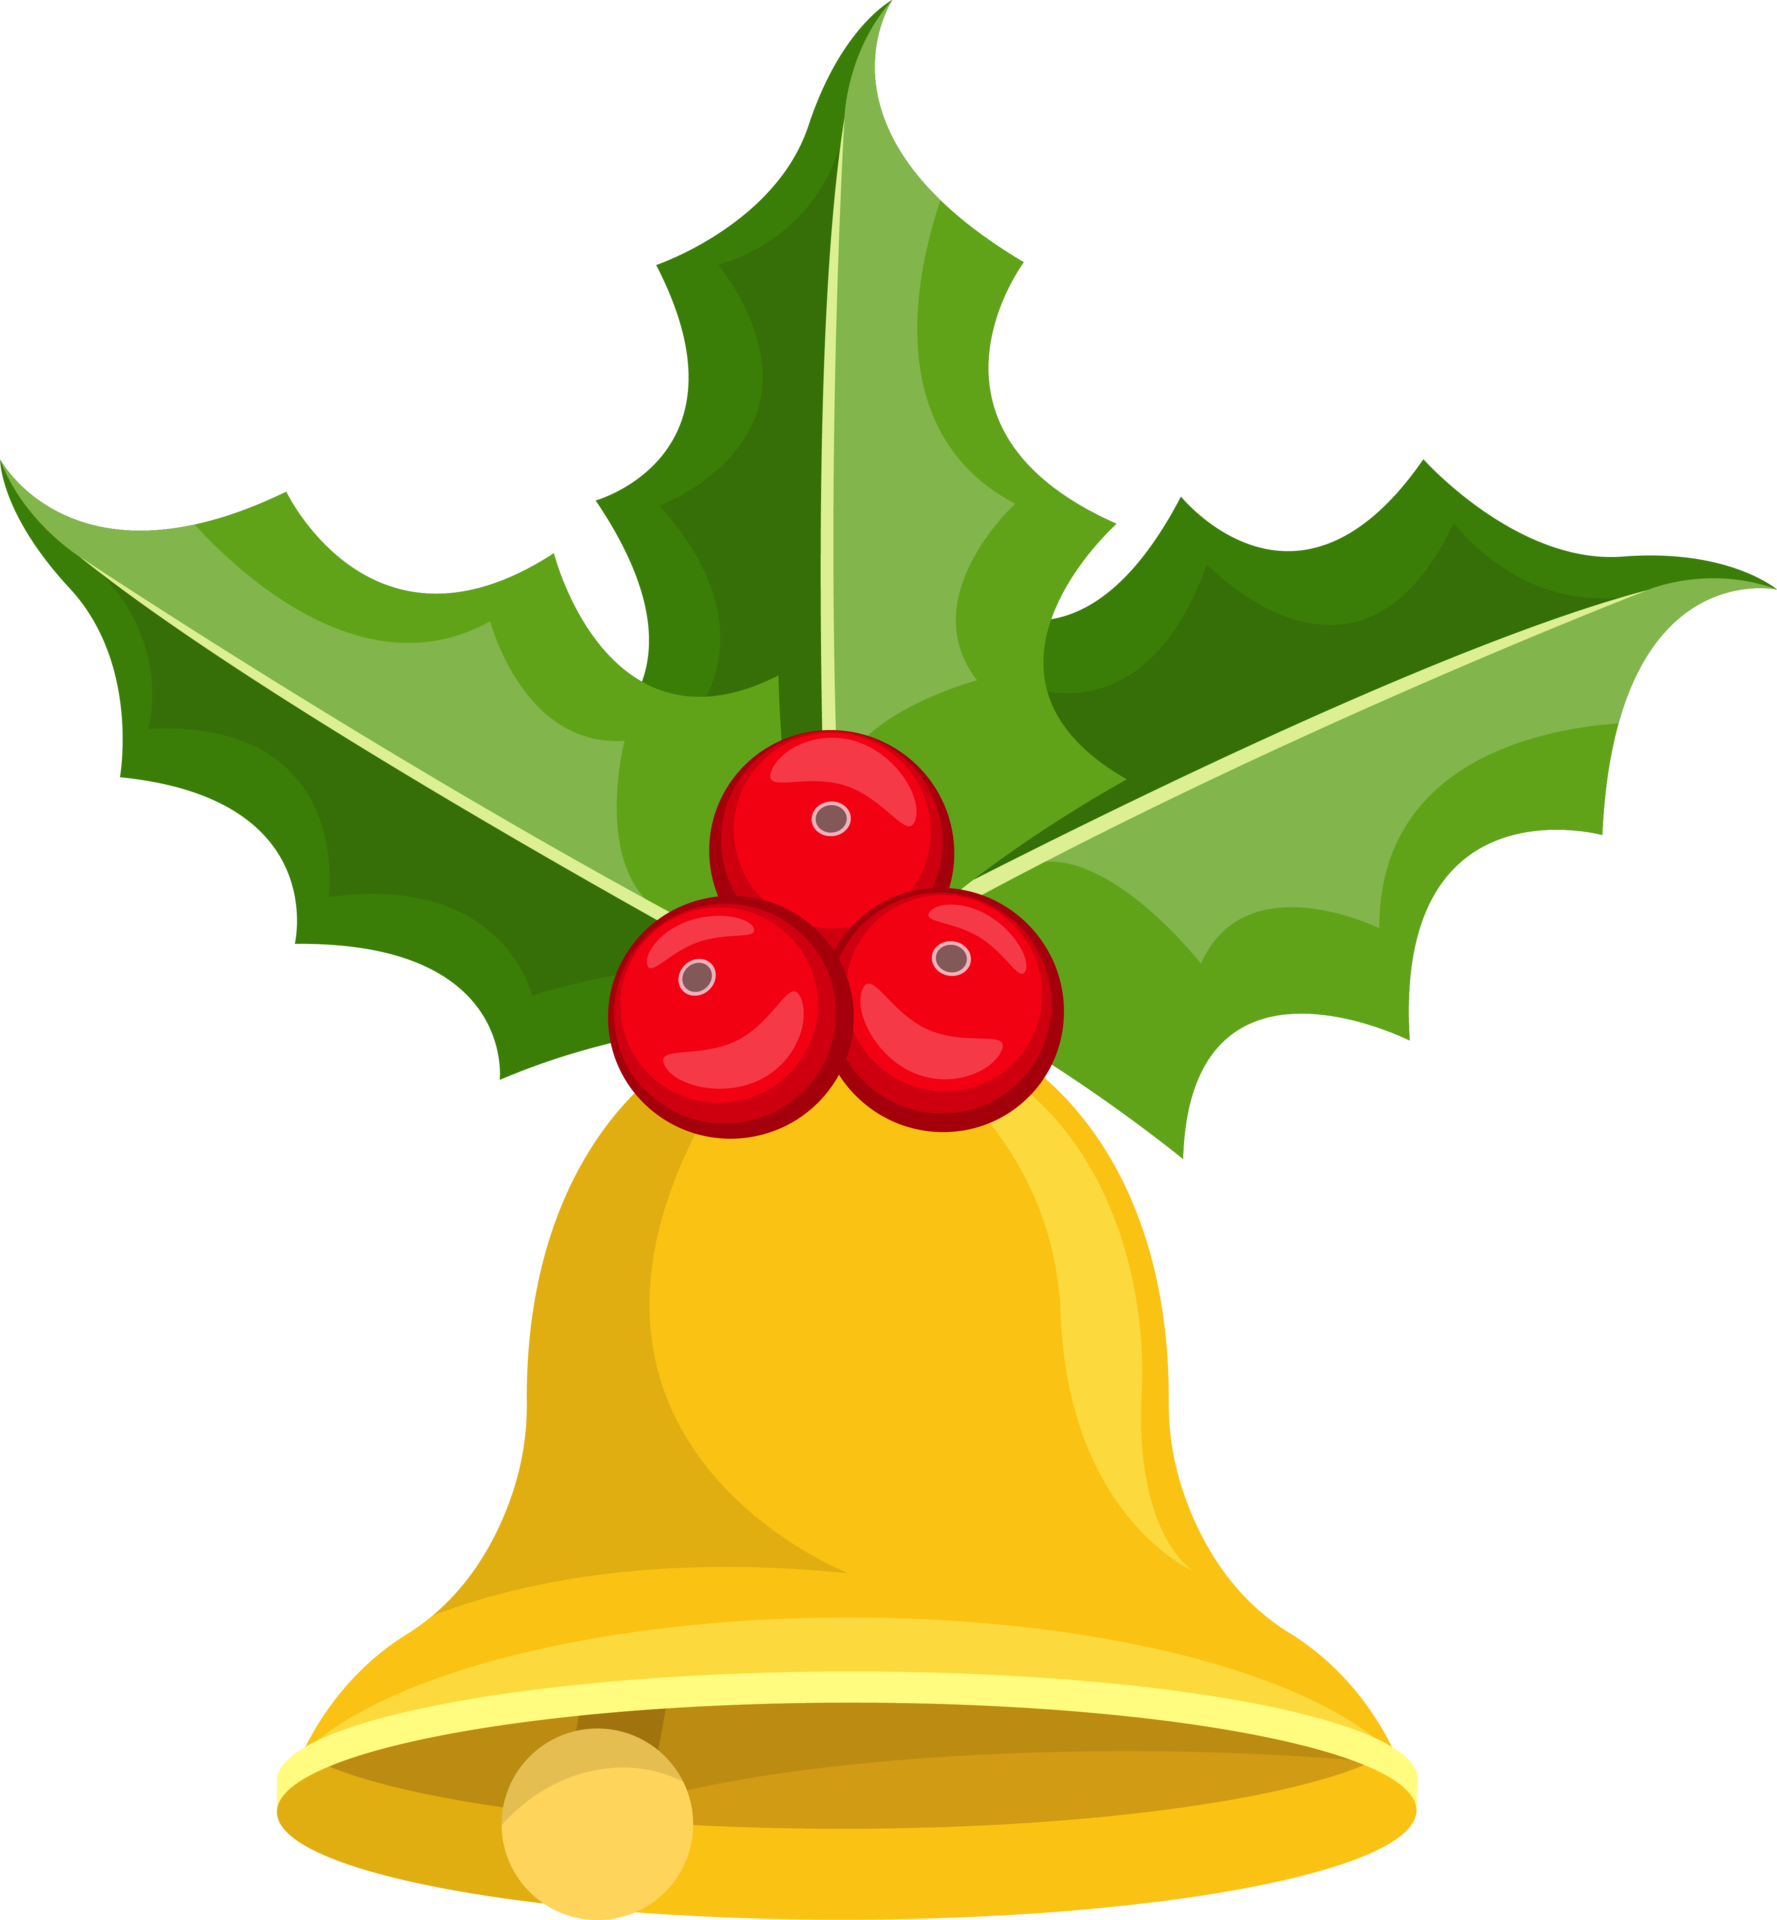 Chuông Giáng Sinh (Christmas bells): Chuông Giáng Sinh luôn là một trong những biểu tượng cho mùa lễ hội Giáng sinh yêu thích. Hãy cùng khám phá những hình ảnh đẹp về chuông Giáng sinh, để mở ra không khí lễ hội ấm áp và đầy niềm vui. Tìm thấy những hình ảnh chuông Giáng sinh thú vị trong thư viện của chúng tôi.